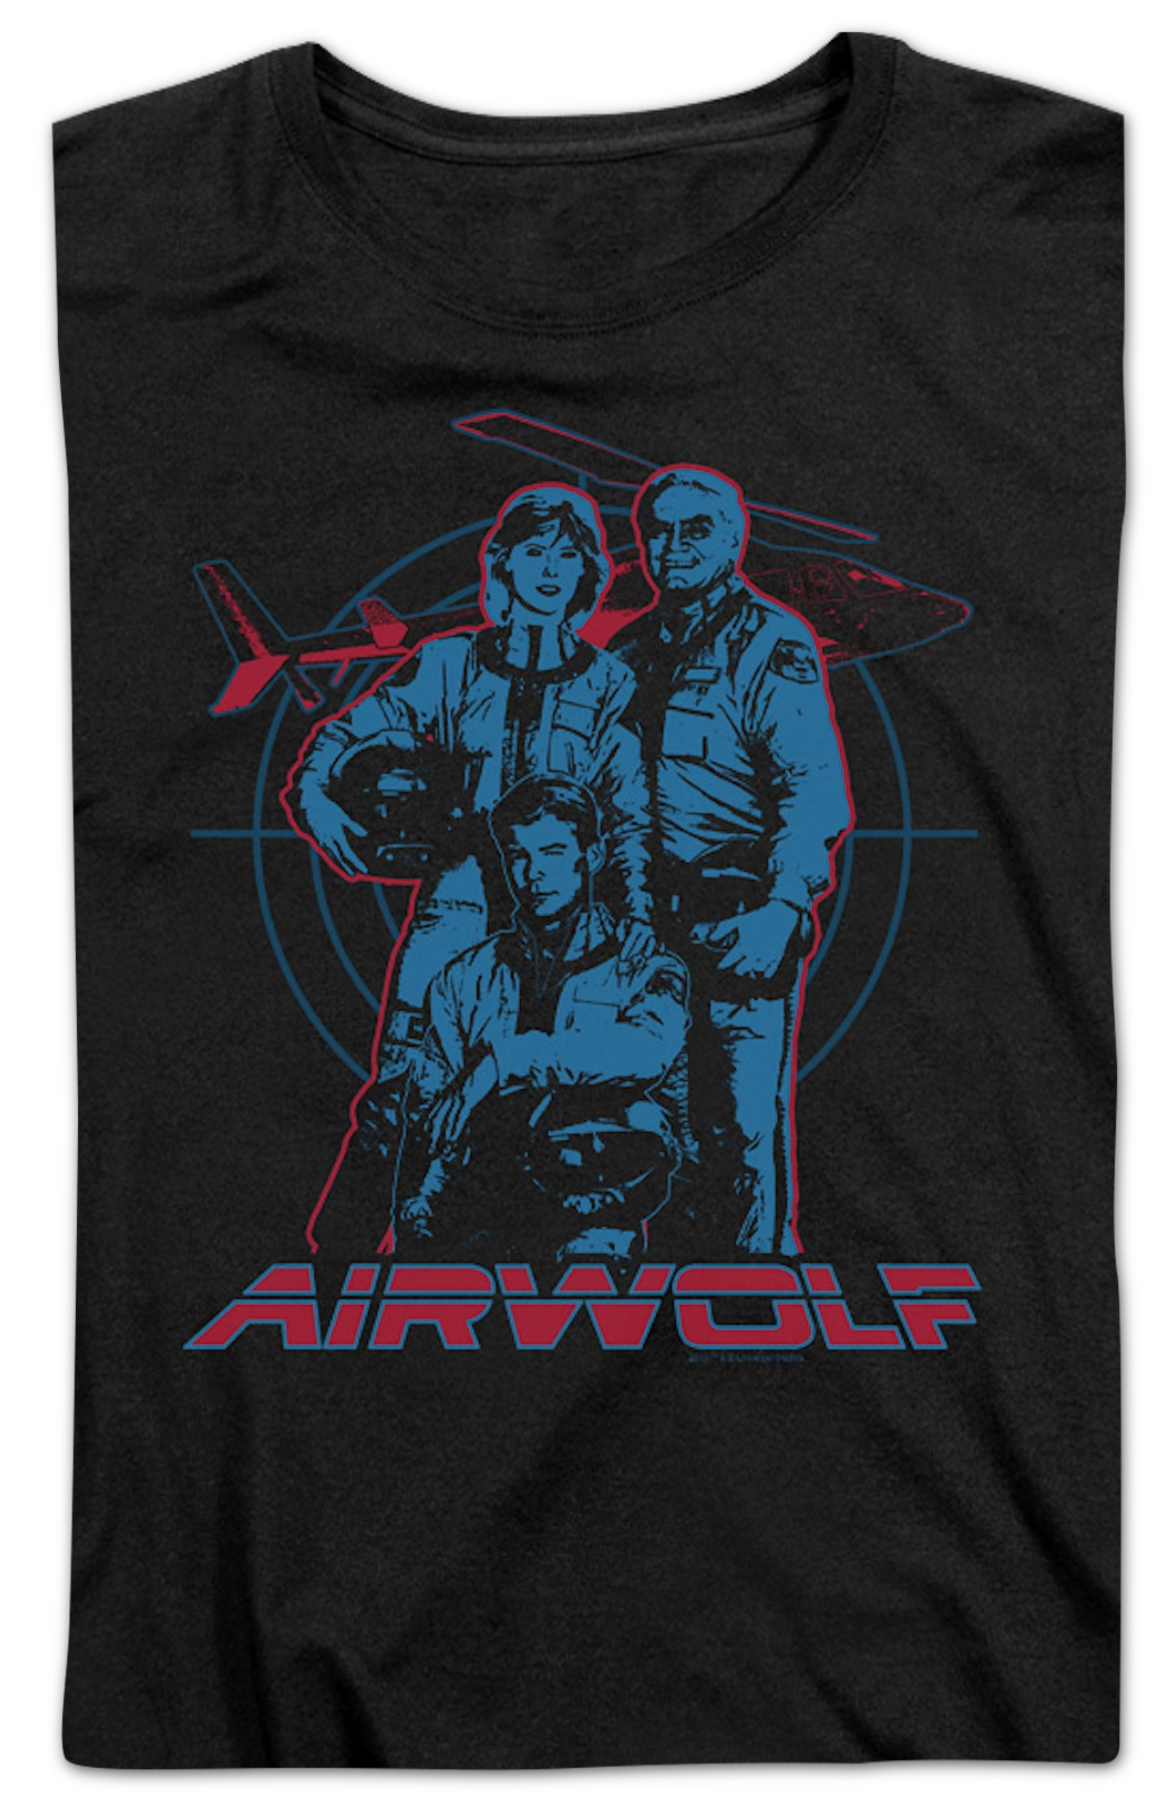 Womens Cast Airwolf Shirt